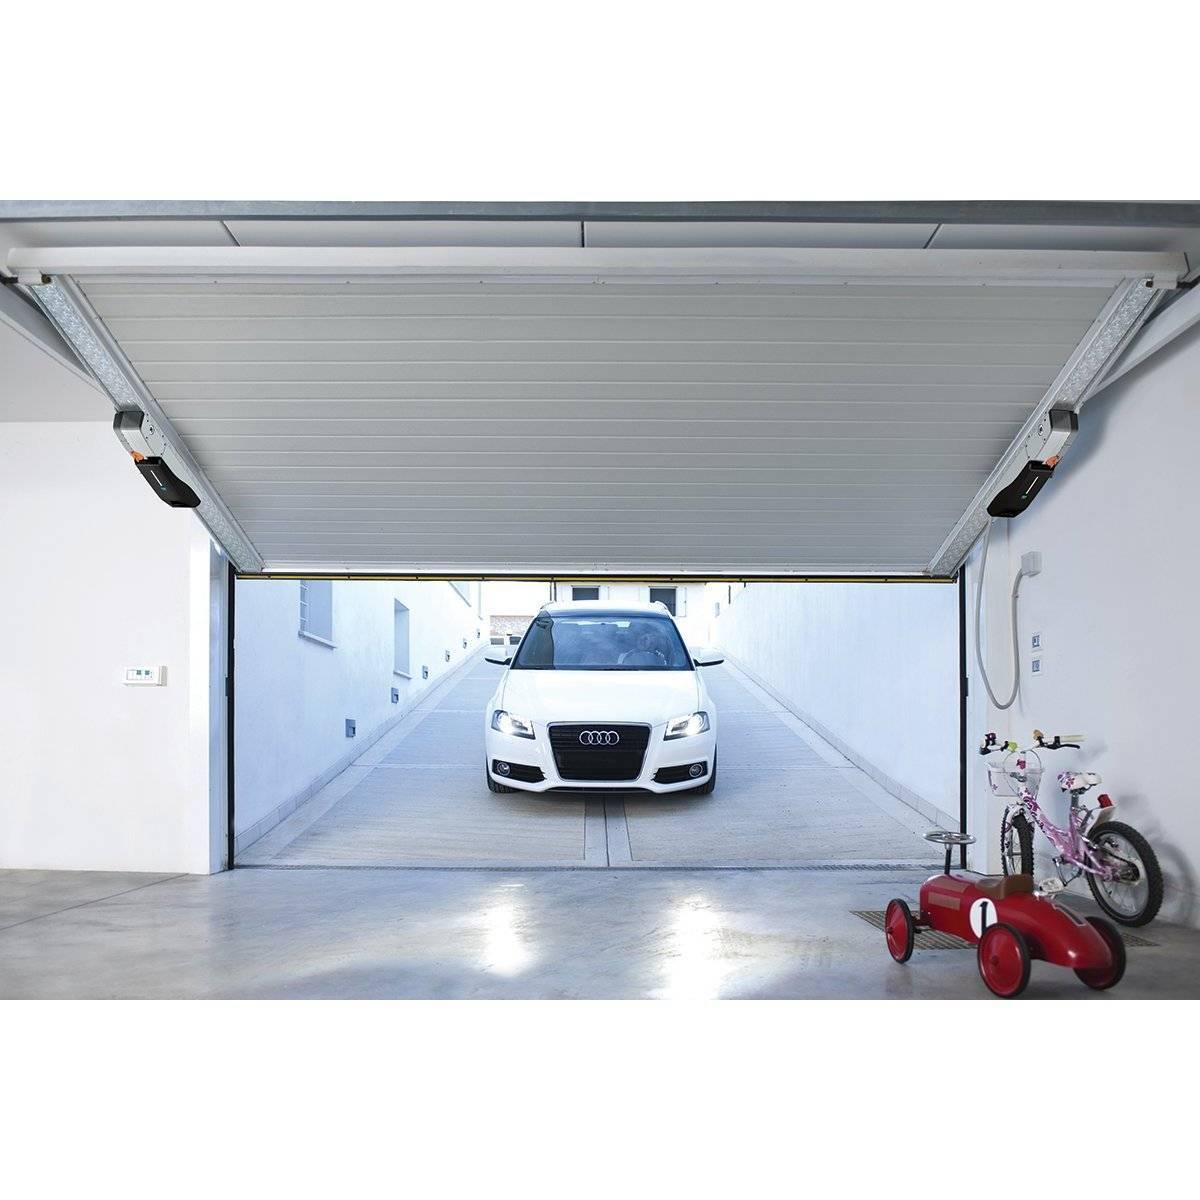 Подъёмные ворота для гаража: стоит или нет устанавливать?